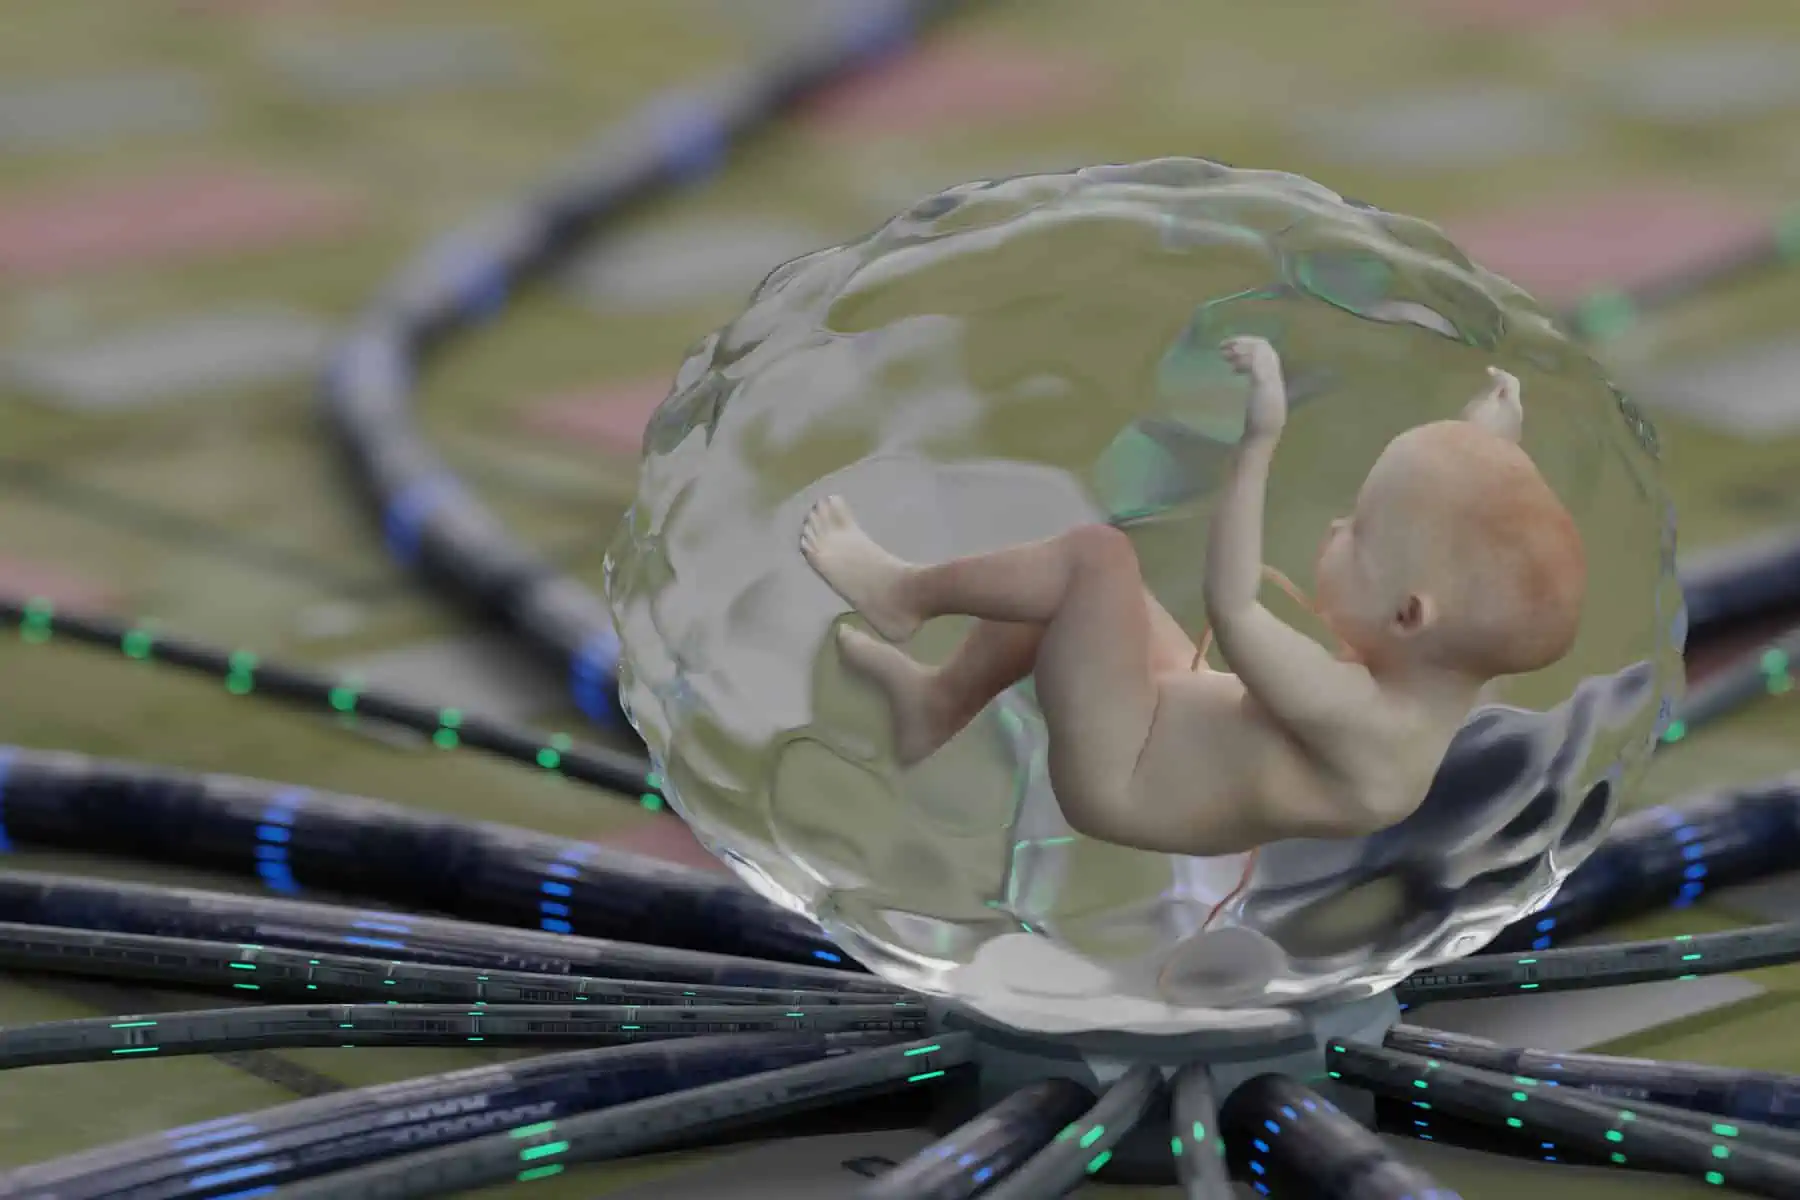 ectolife primer utero artificial